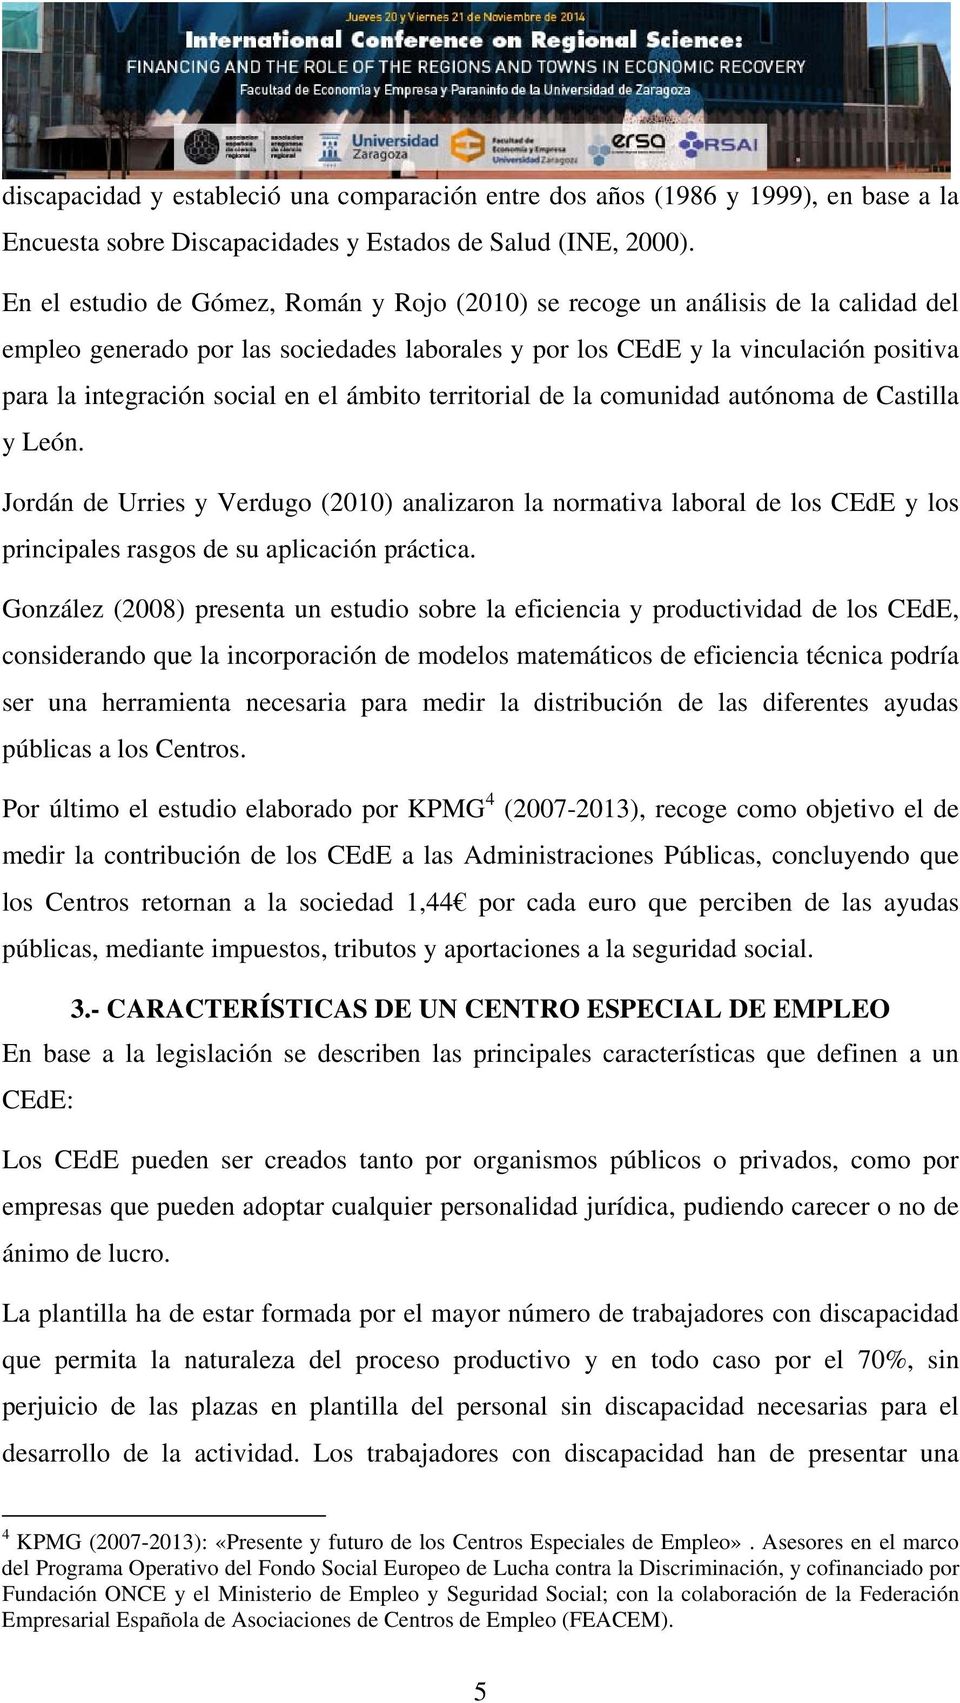 el ámbito territorial de la comunidad autónoma de Castilla y León. Jordán de Urries y Verdugo (2010) analizaron la normativa laboral de los CEdE y los principales rasgos de su aplicación práctica.